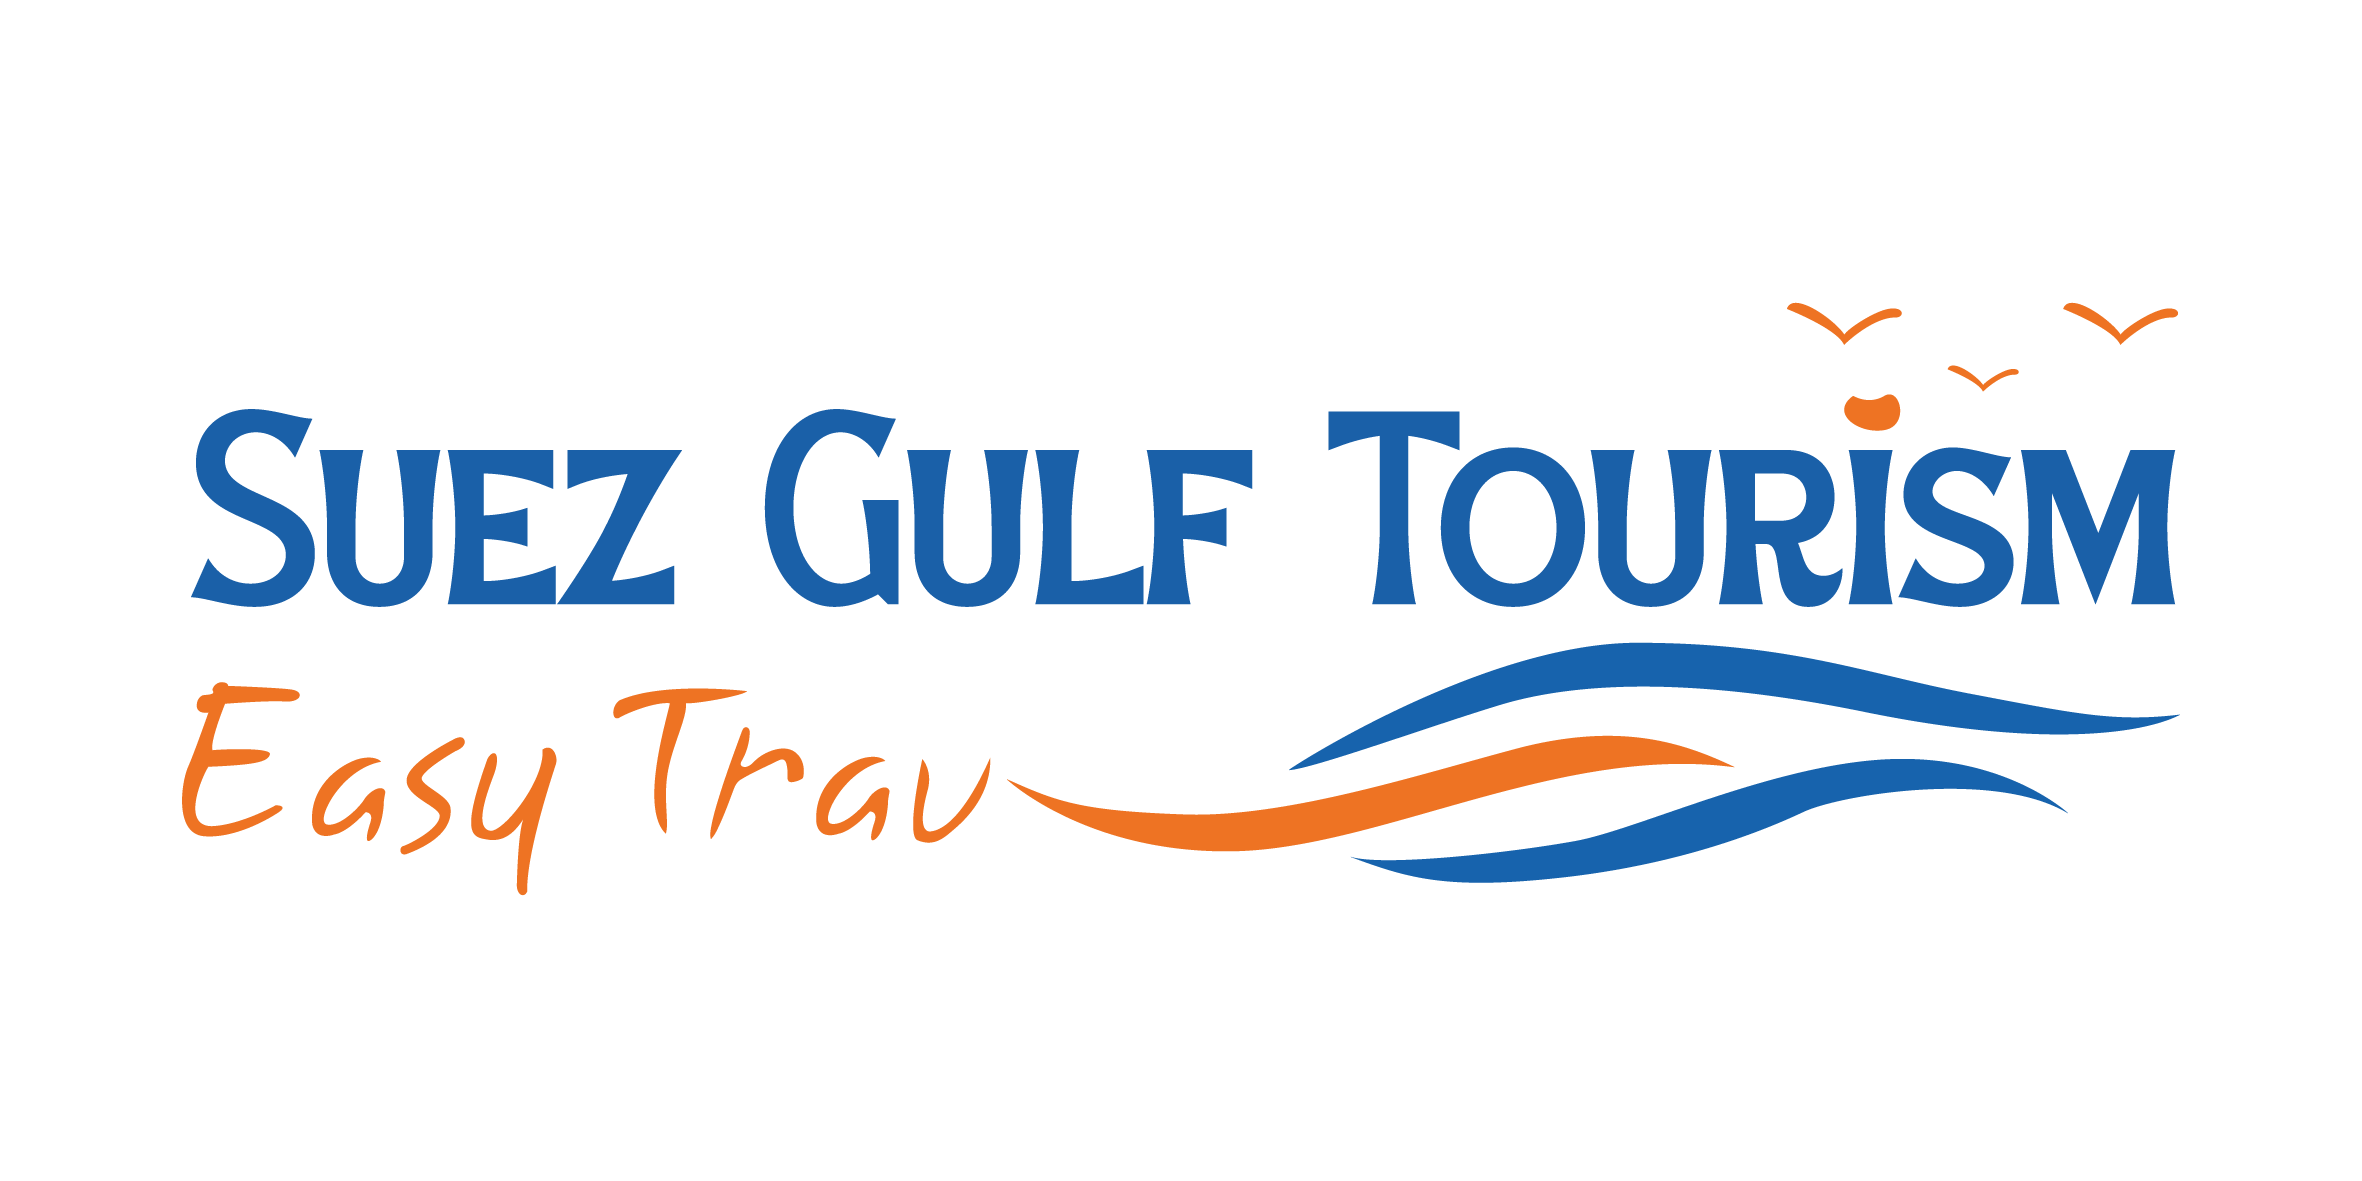 Suez Gulf Tourism